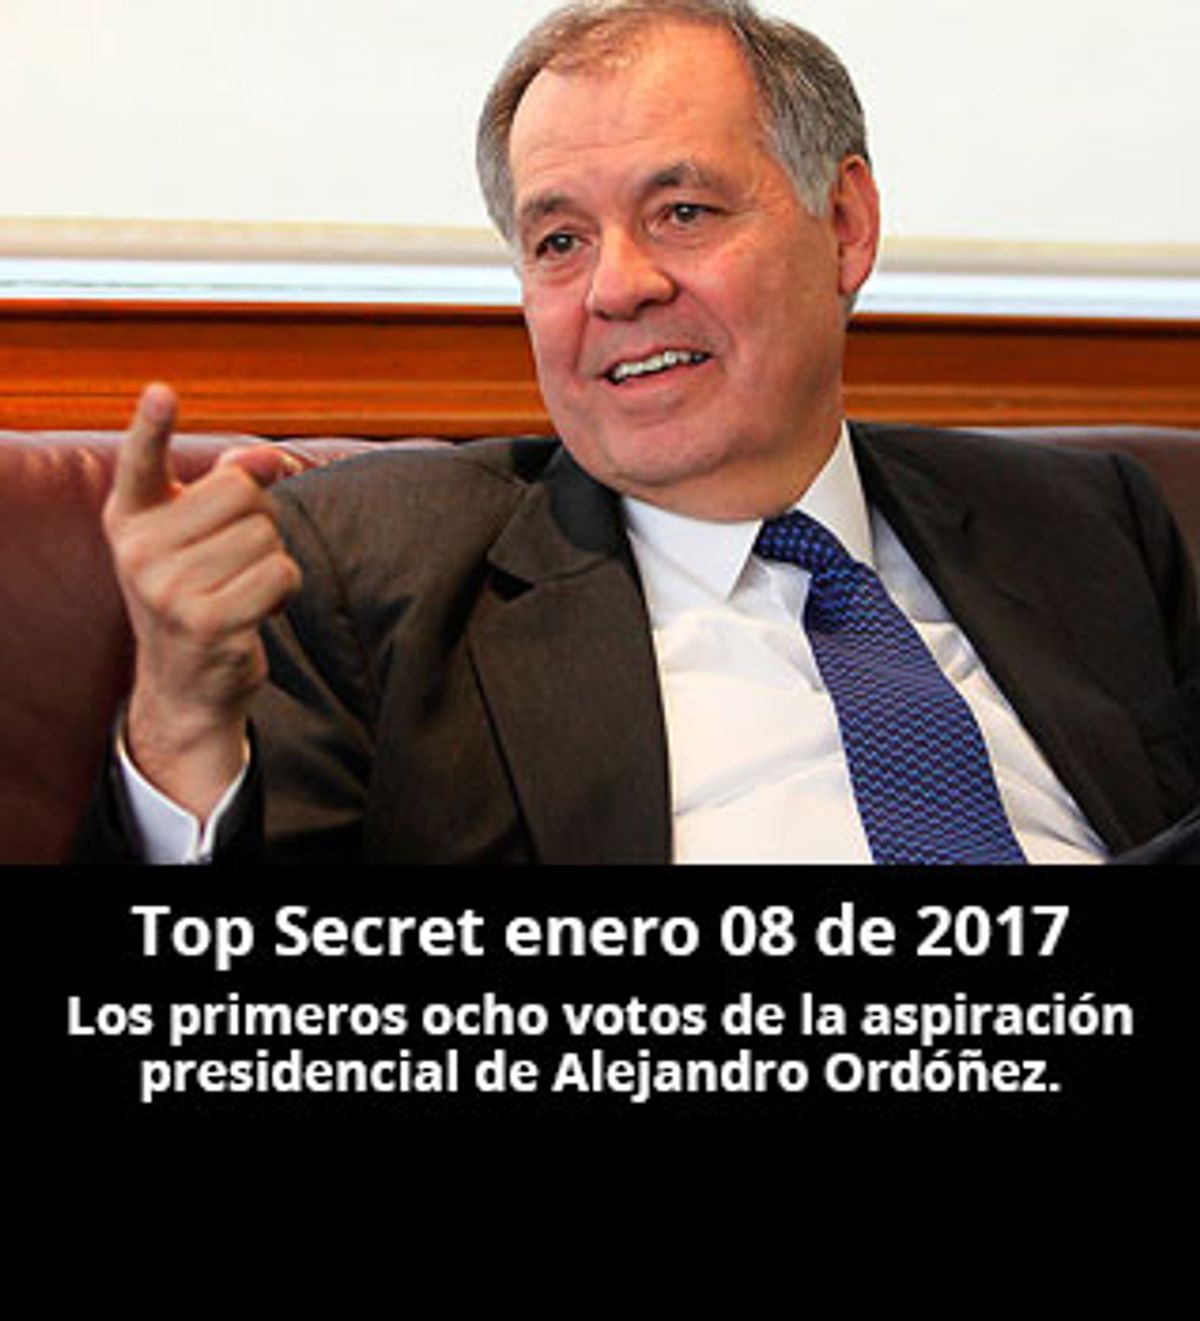 Top Secret enero 08 de 2017